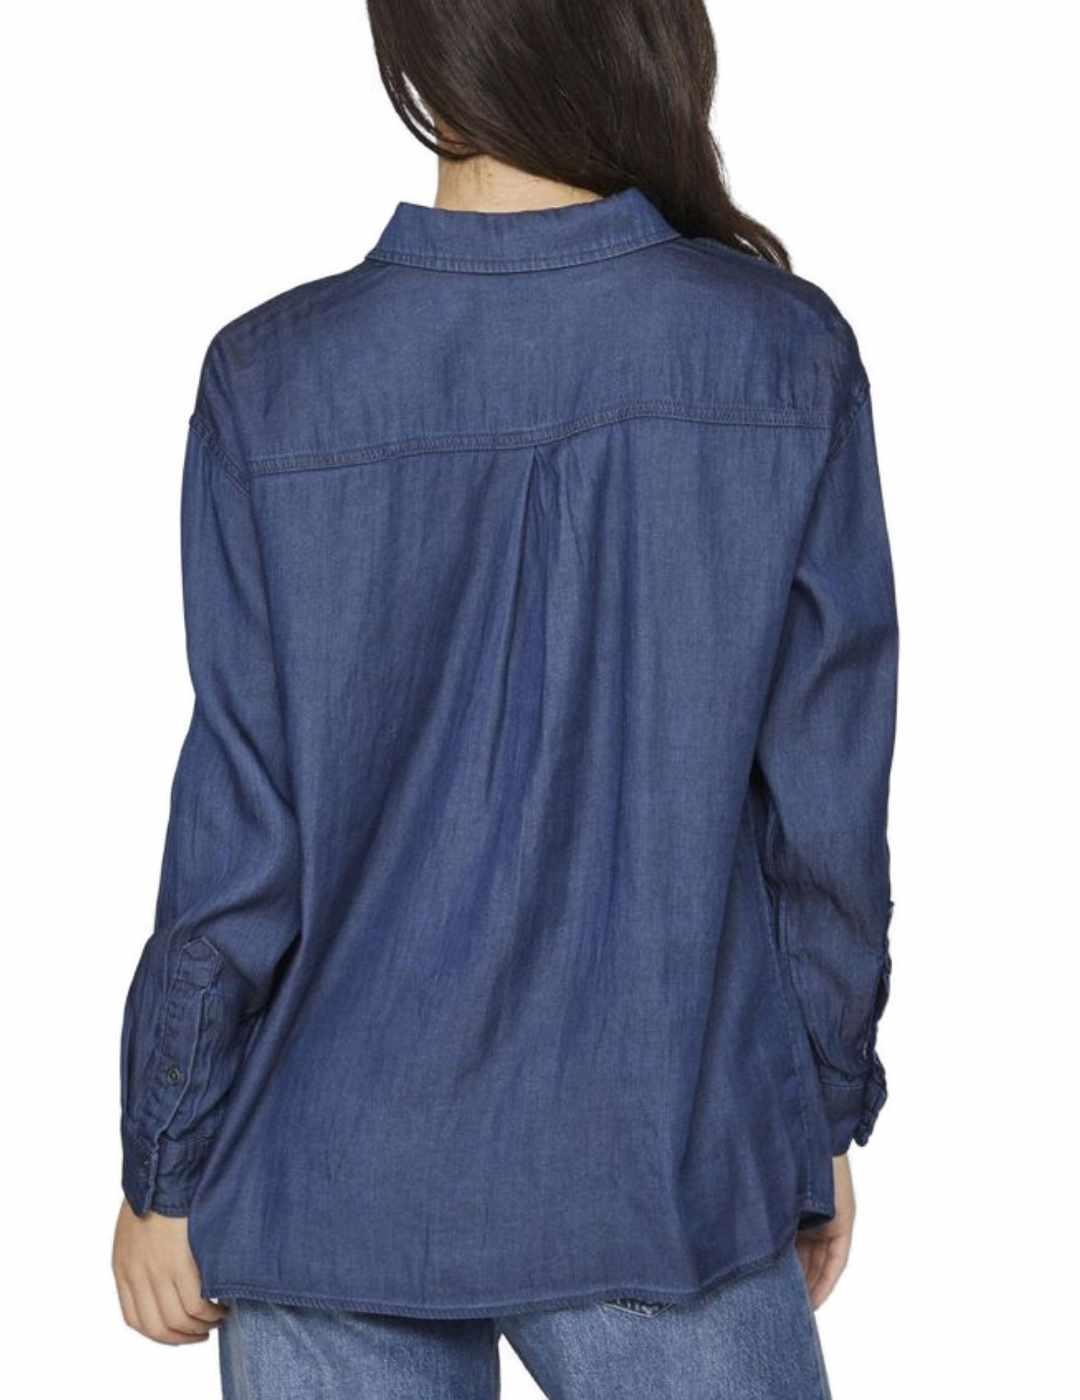 Camisa Vila vaquera azul oscura manga larga para mujer